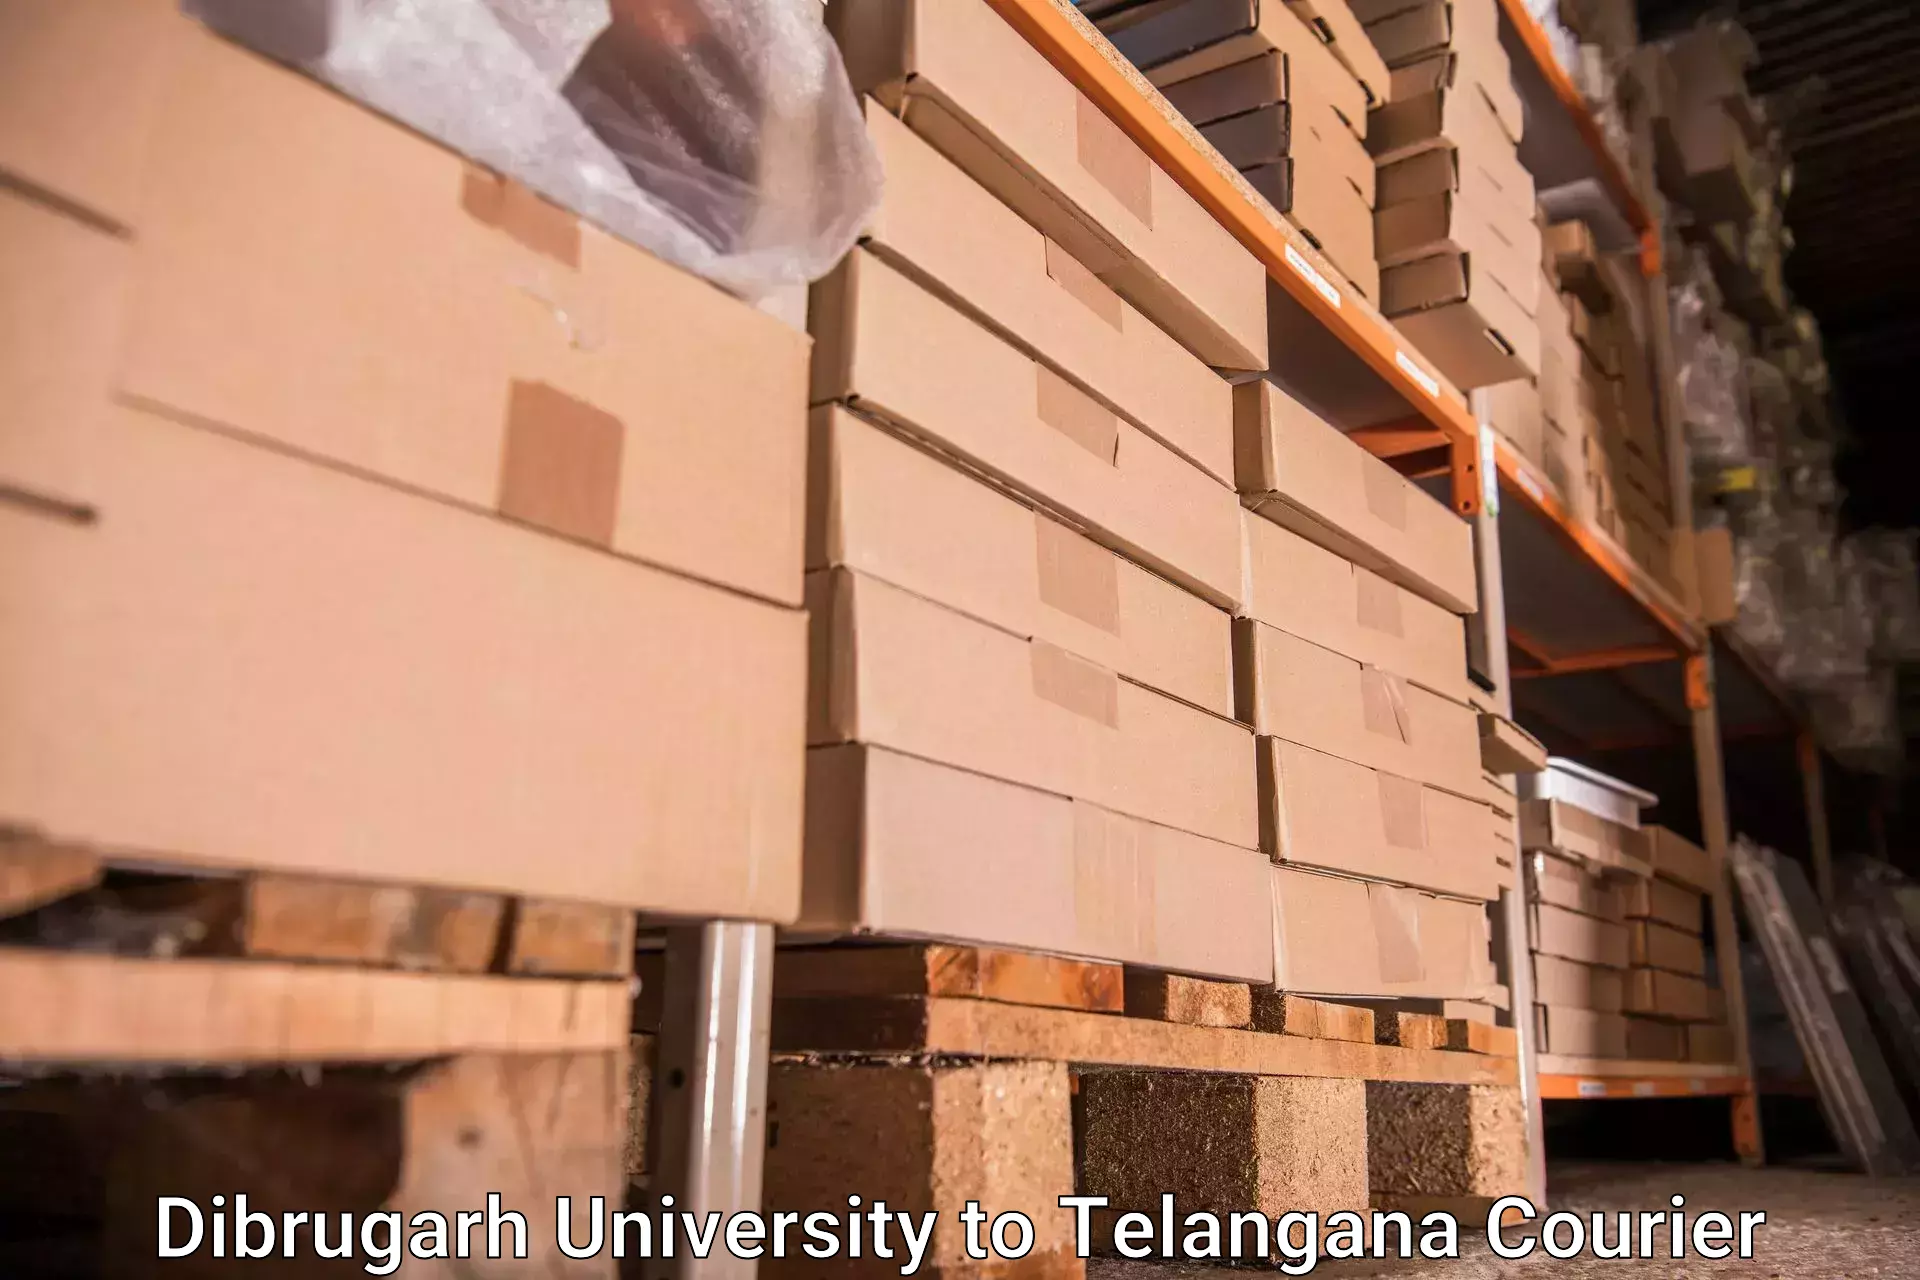 Baggage transport technology Dibrugarh University to Kalwakurthy